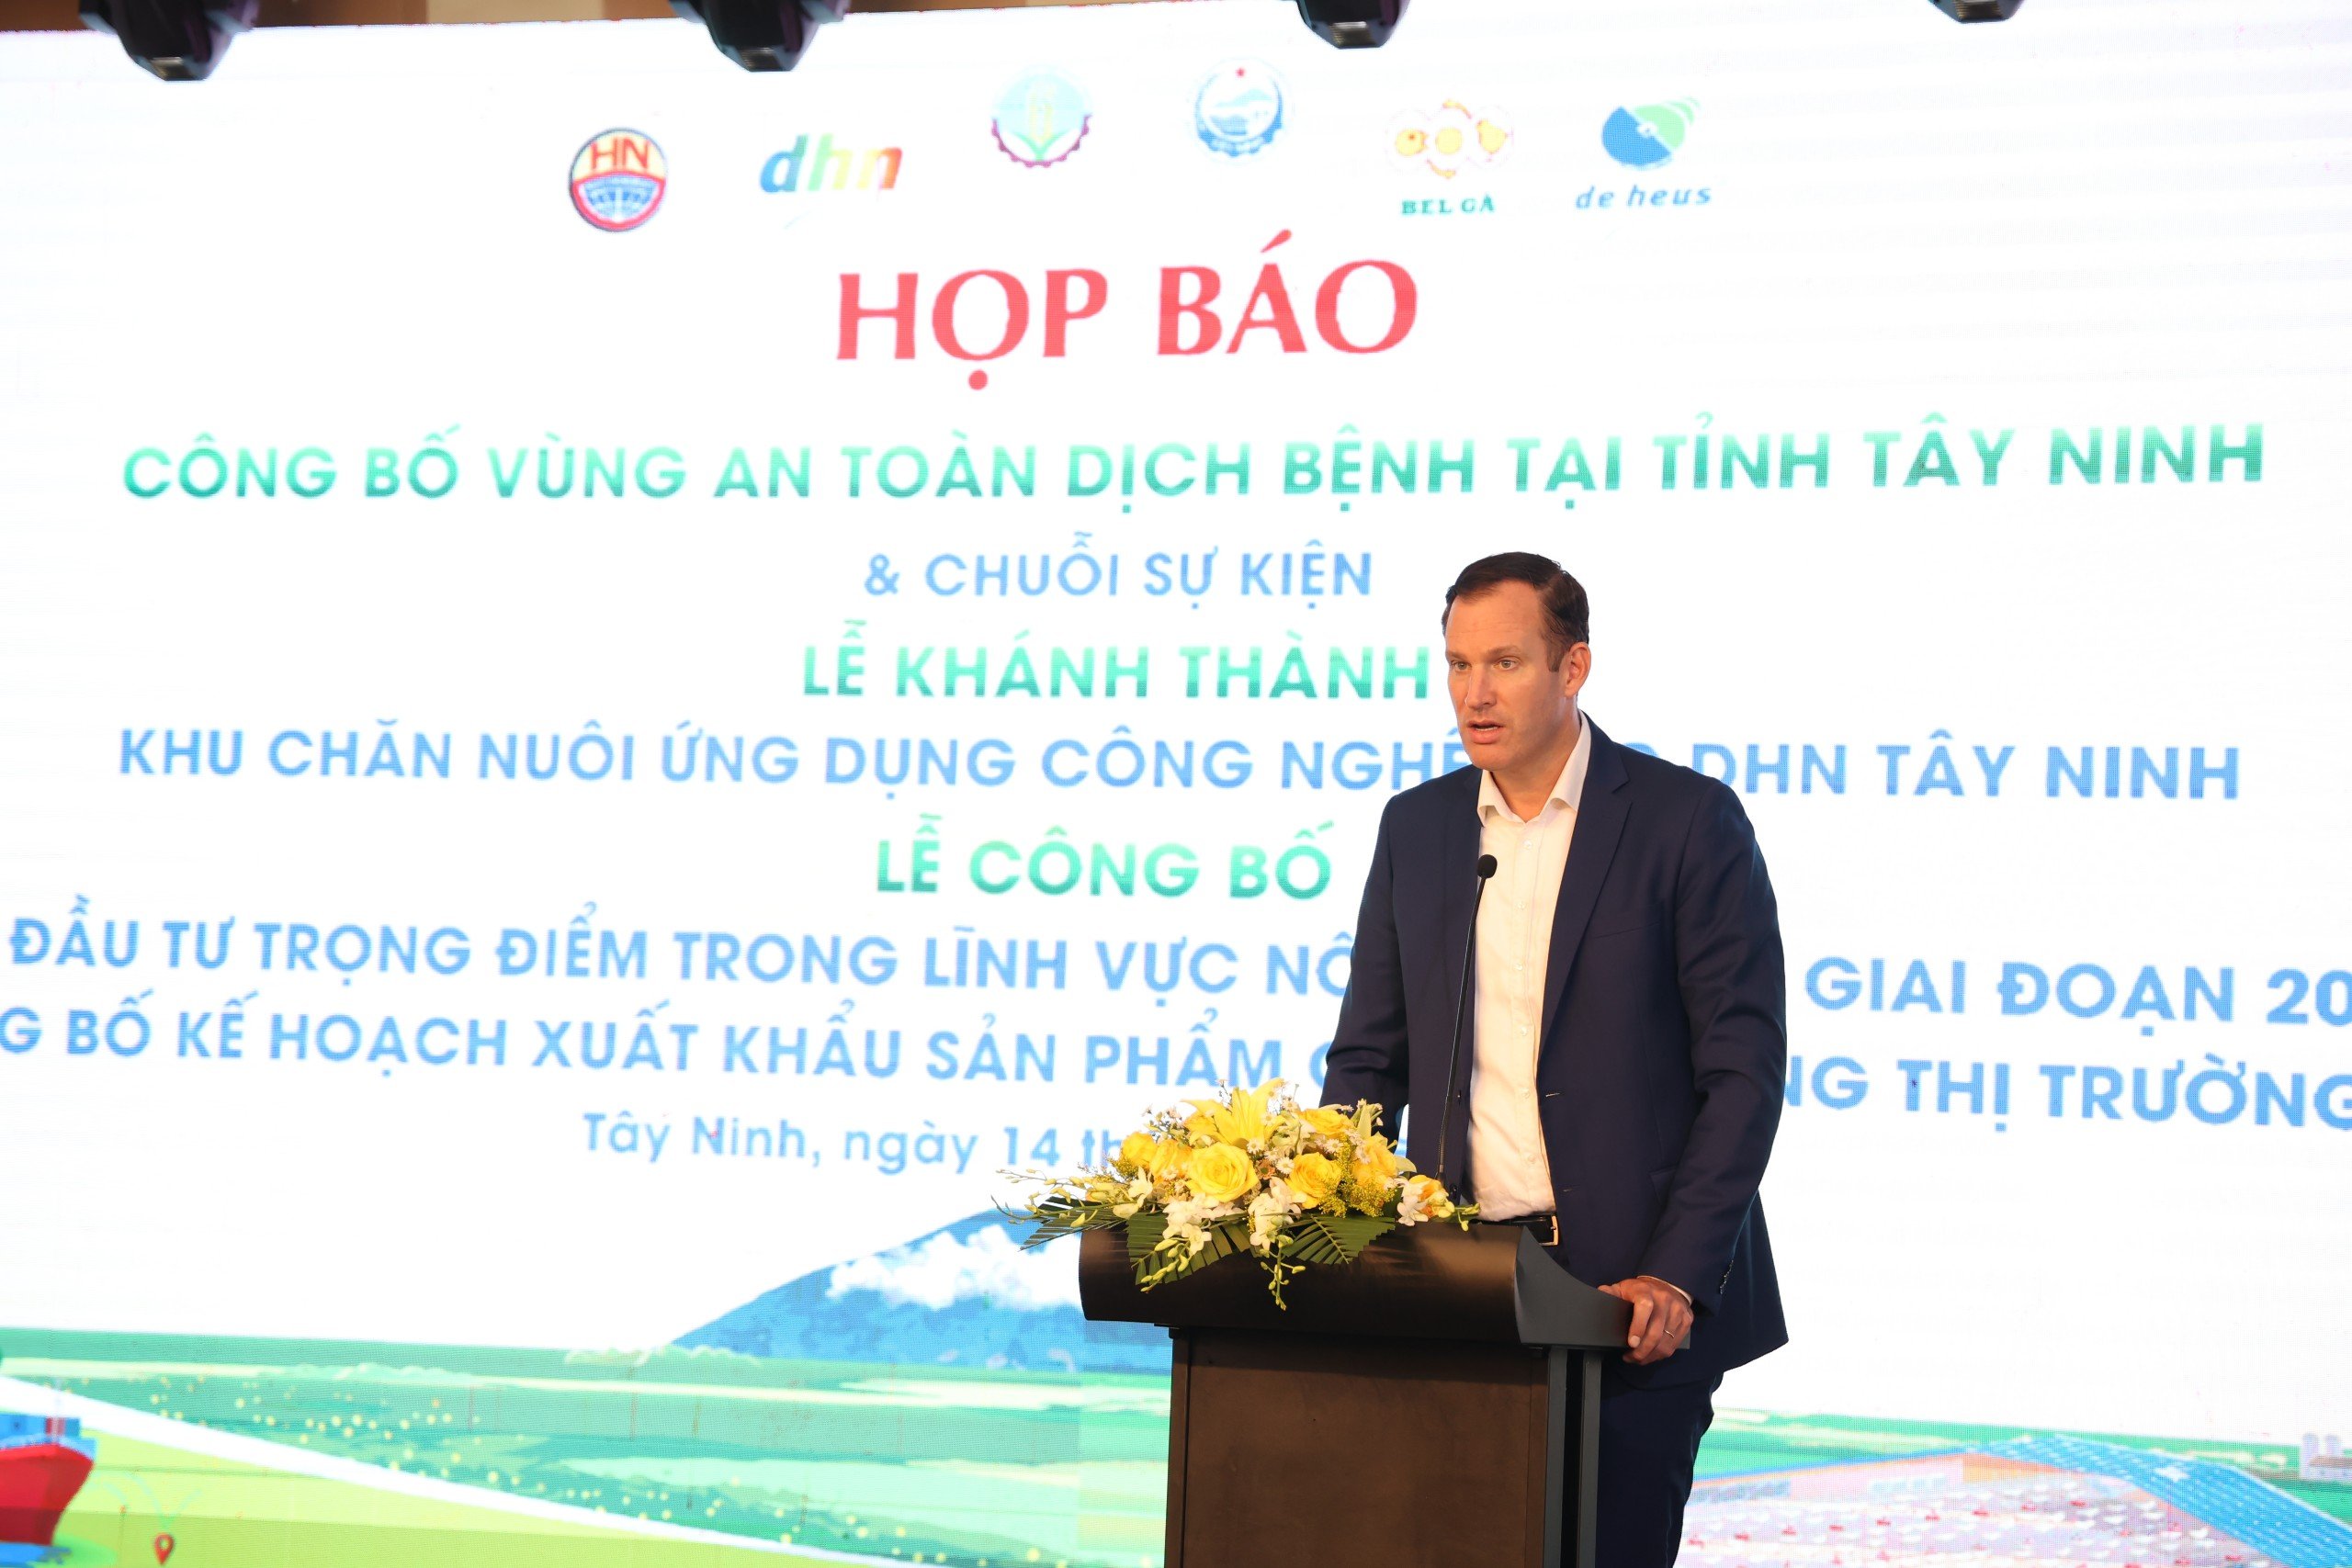 Tây Ninh chuẩn bị đón 1.000 khách dự chuỗi sự kiện lớn ngành nông nghiệp và công bố vùng an toàn dịch bệnh- Ảnh 4.